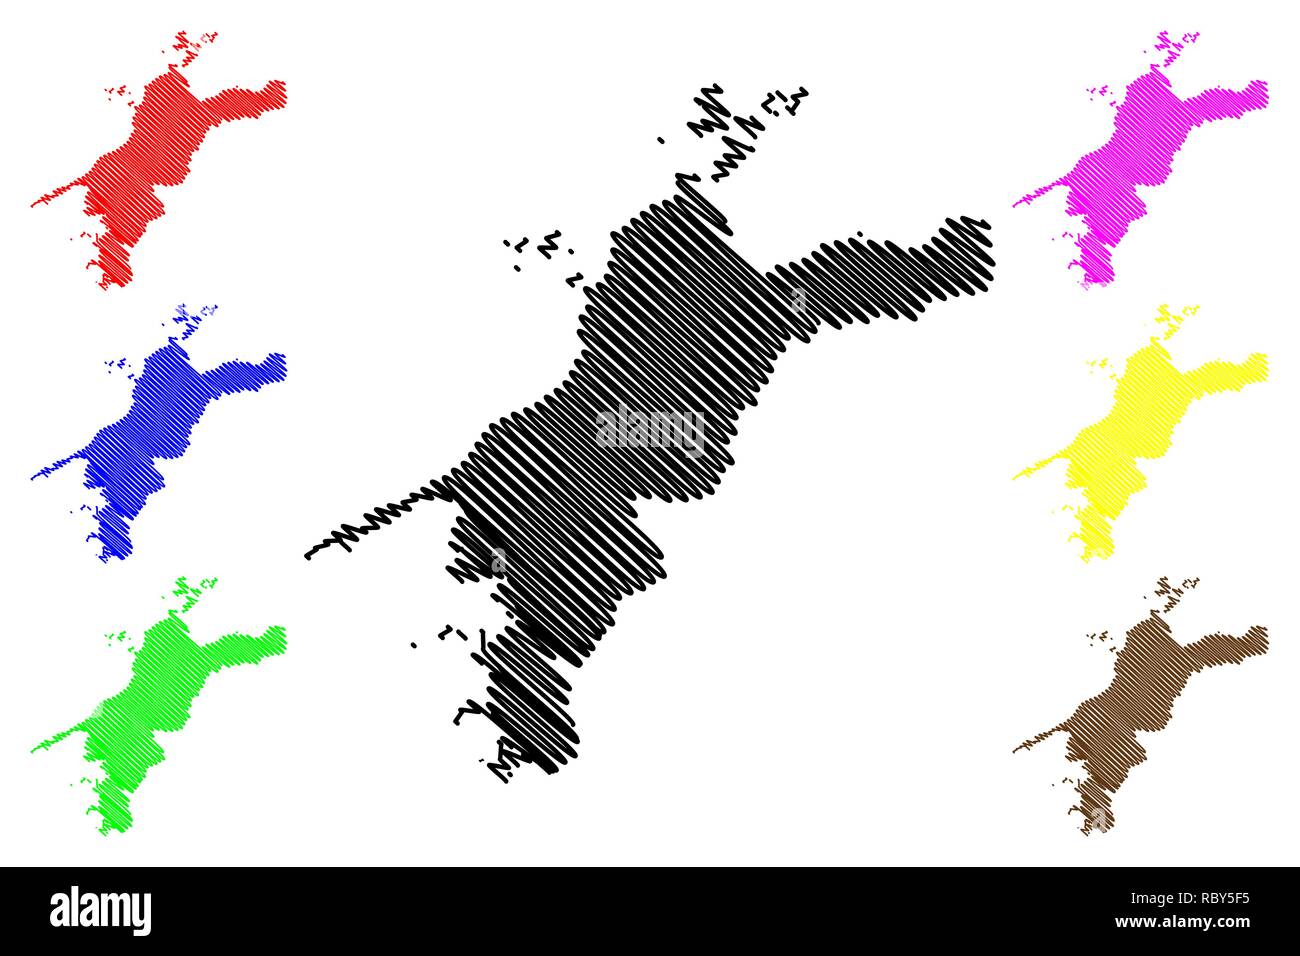 Préfecture d'Ehime (divisions administratives du Japon, préfectures du Japon) map vector illustration, scribble sketch carte Ehime Illustration de Vecteur